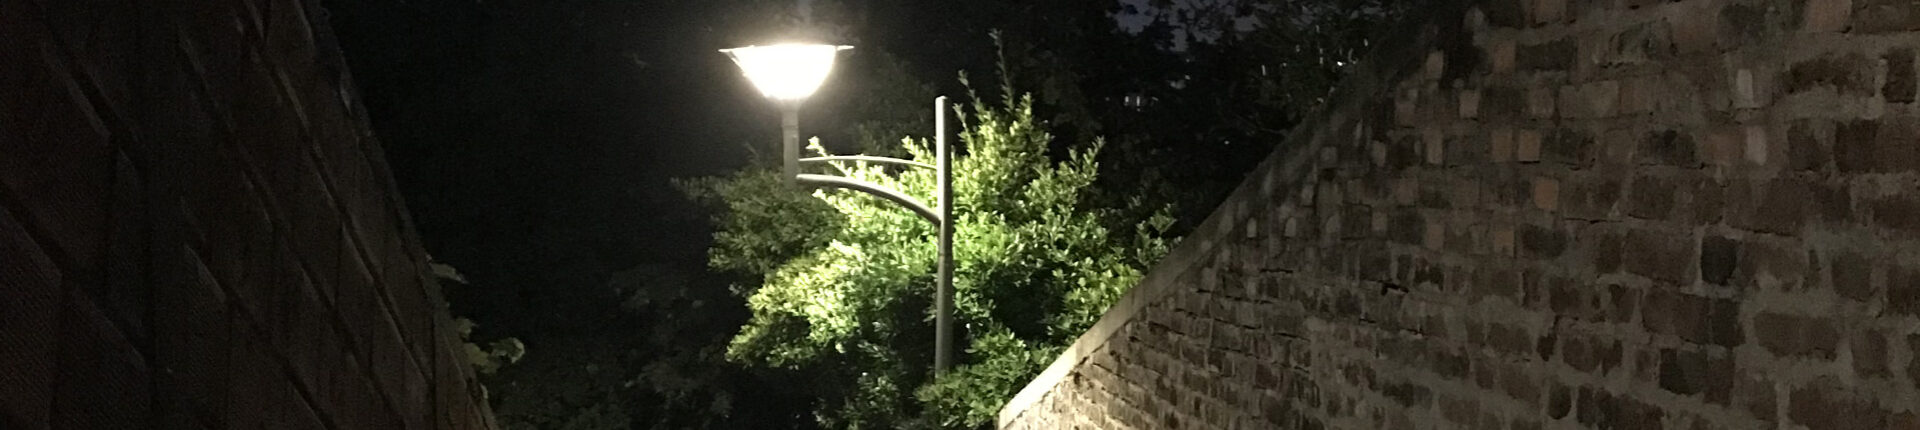 Sèvres, ville exemplaire  en matière d’éclairage public